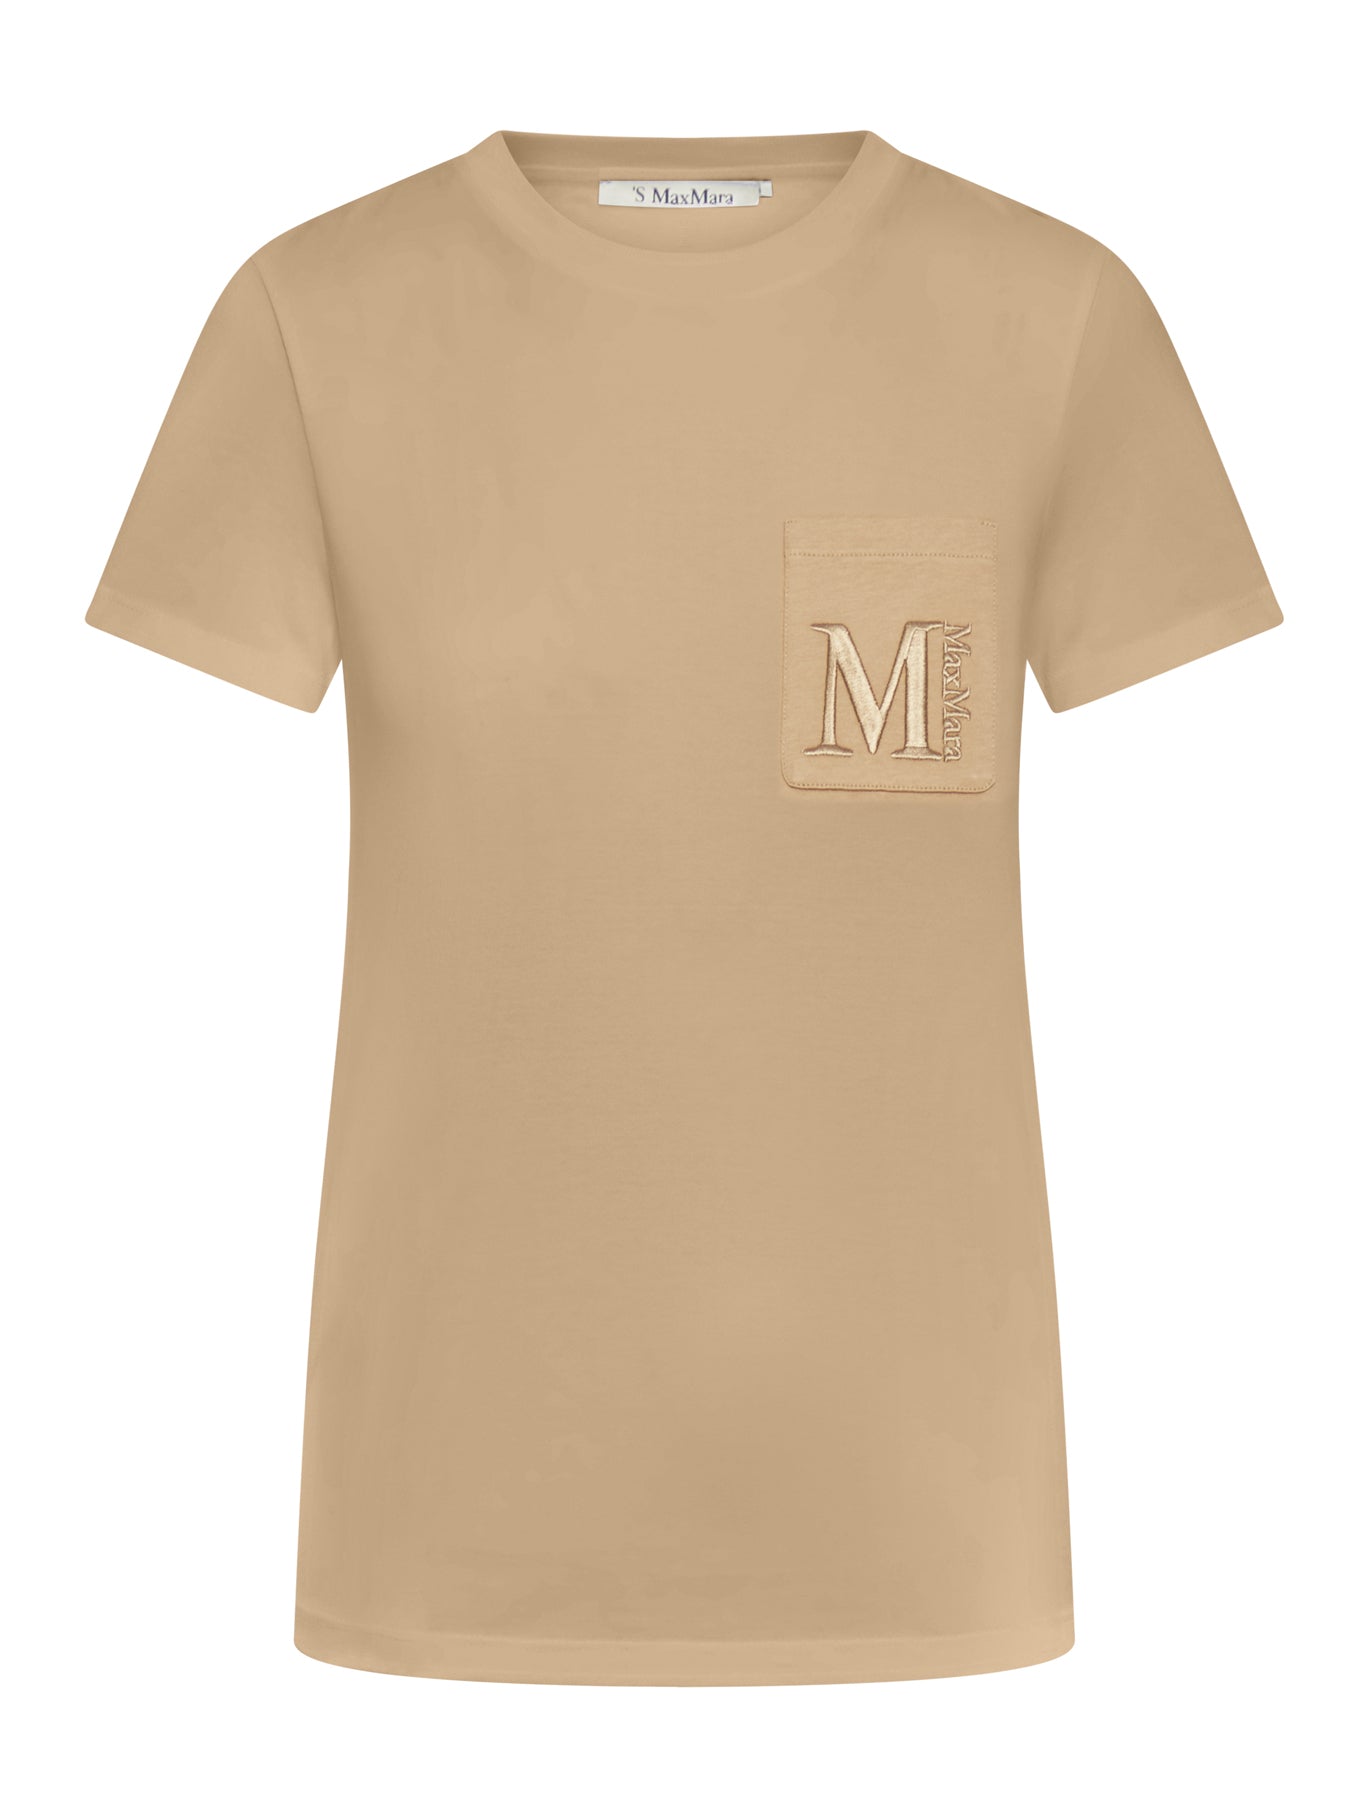 Madeira cotton t-shirt